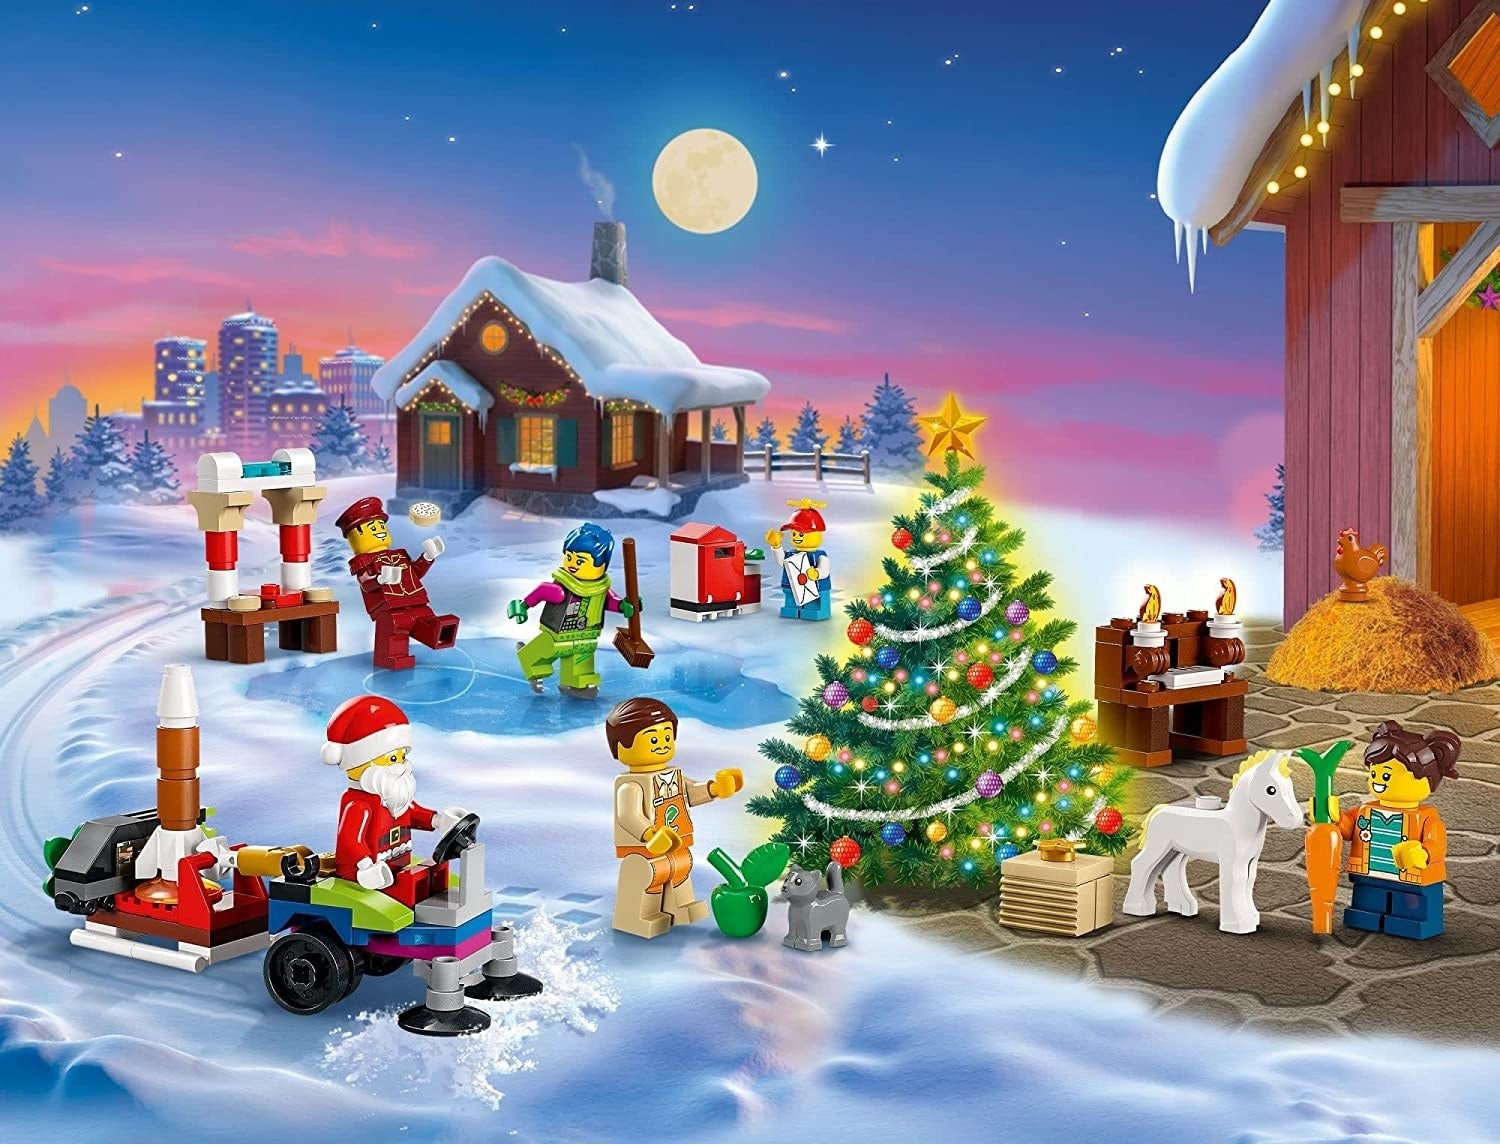 festive lego figures including santa claus